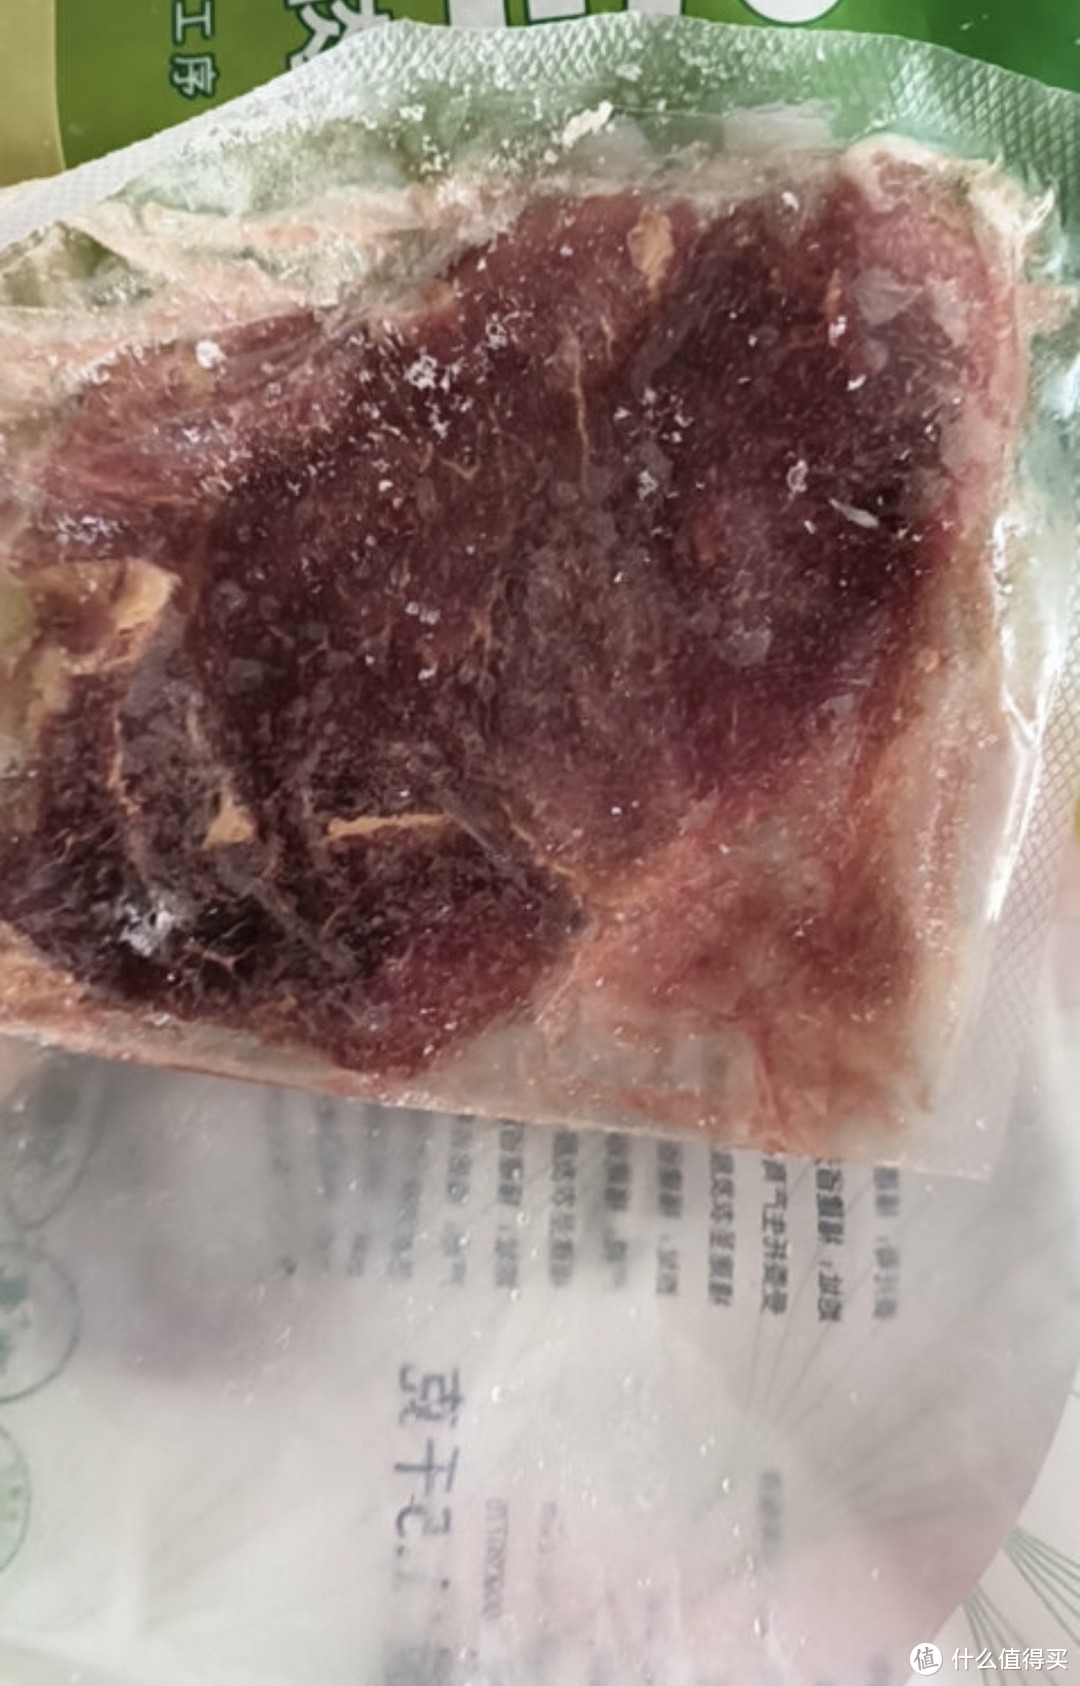 ￼￼大希地盒装整切调理眼肉牛排含酱包共700g（5片）儿童 牛扒 冷冻牛肉￼￼